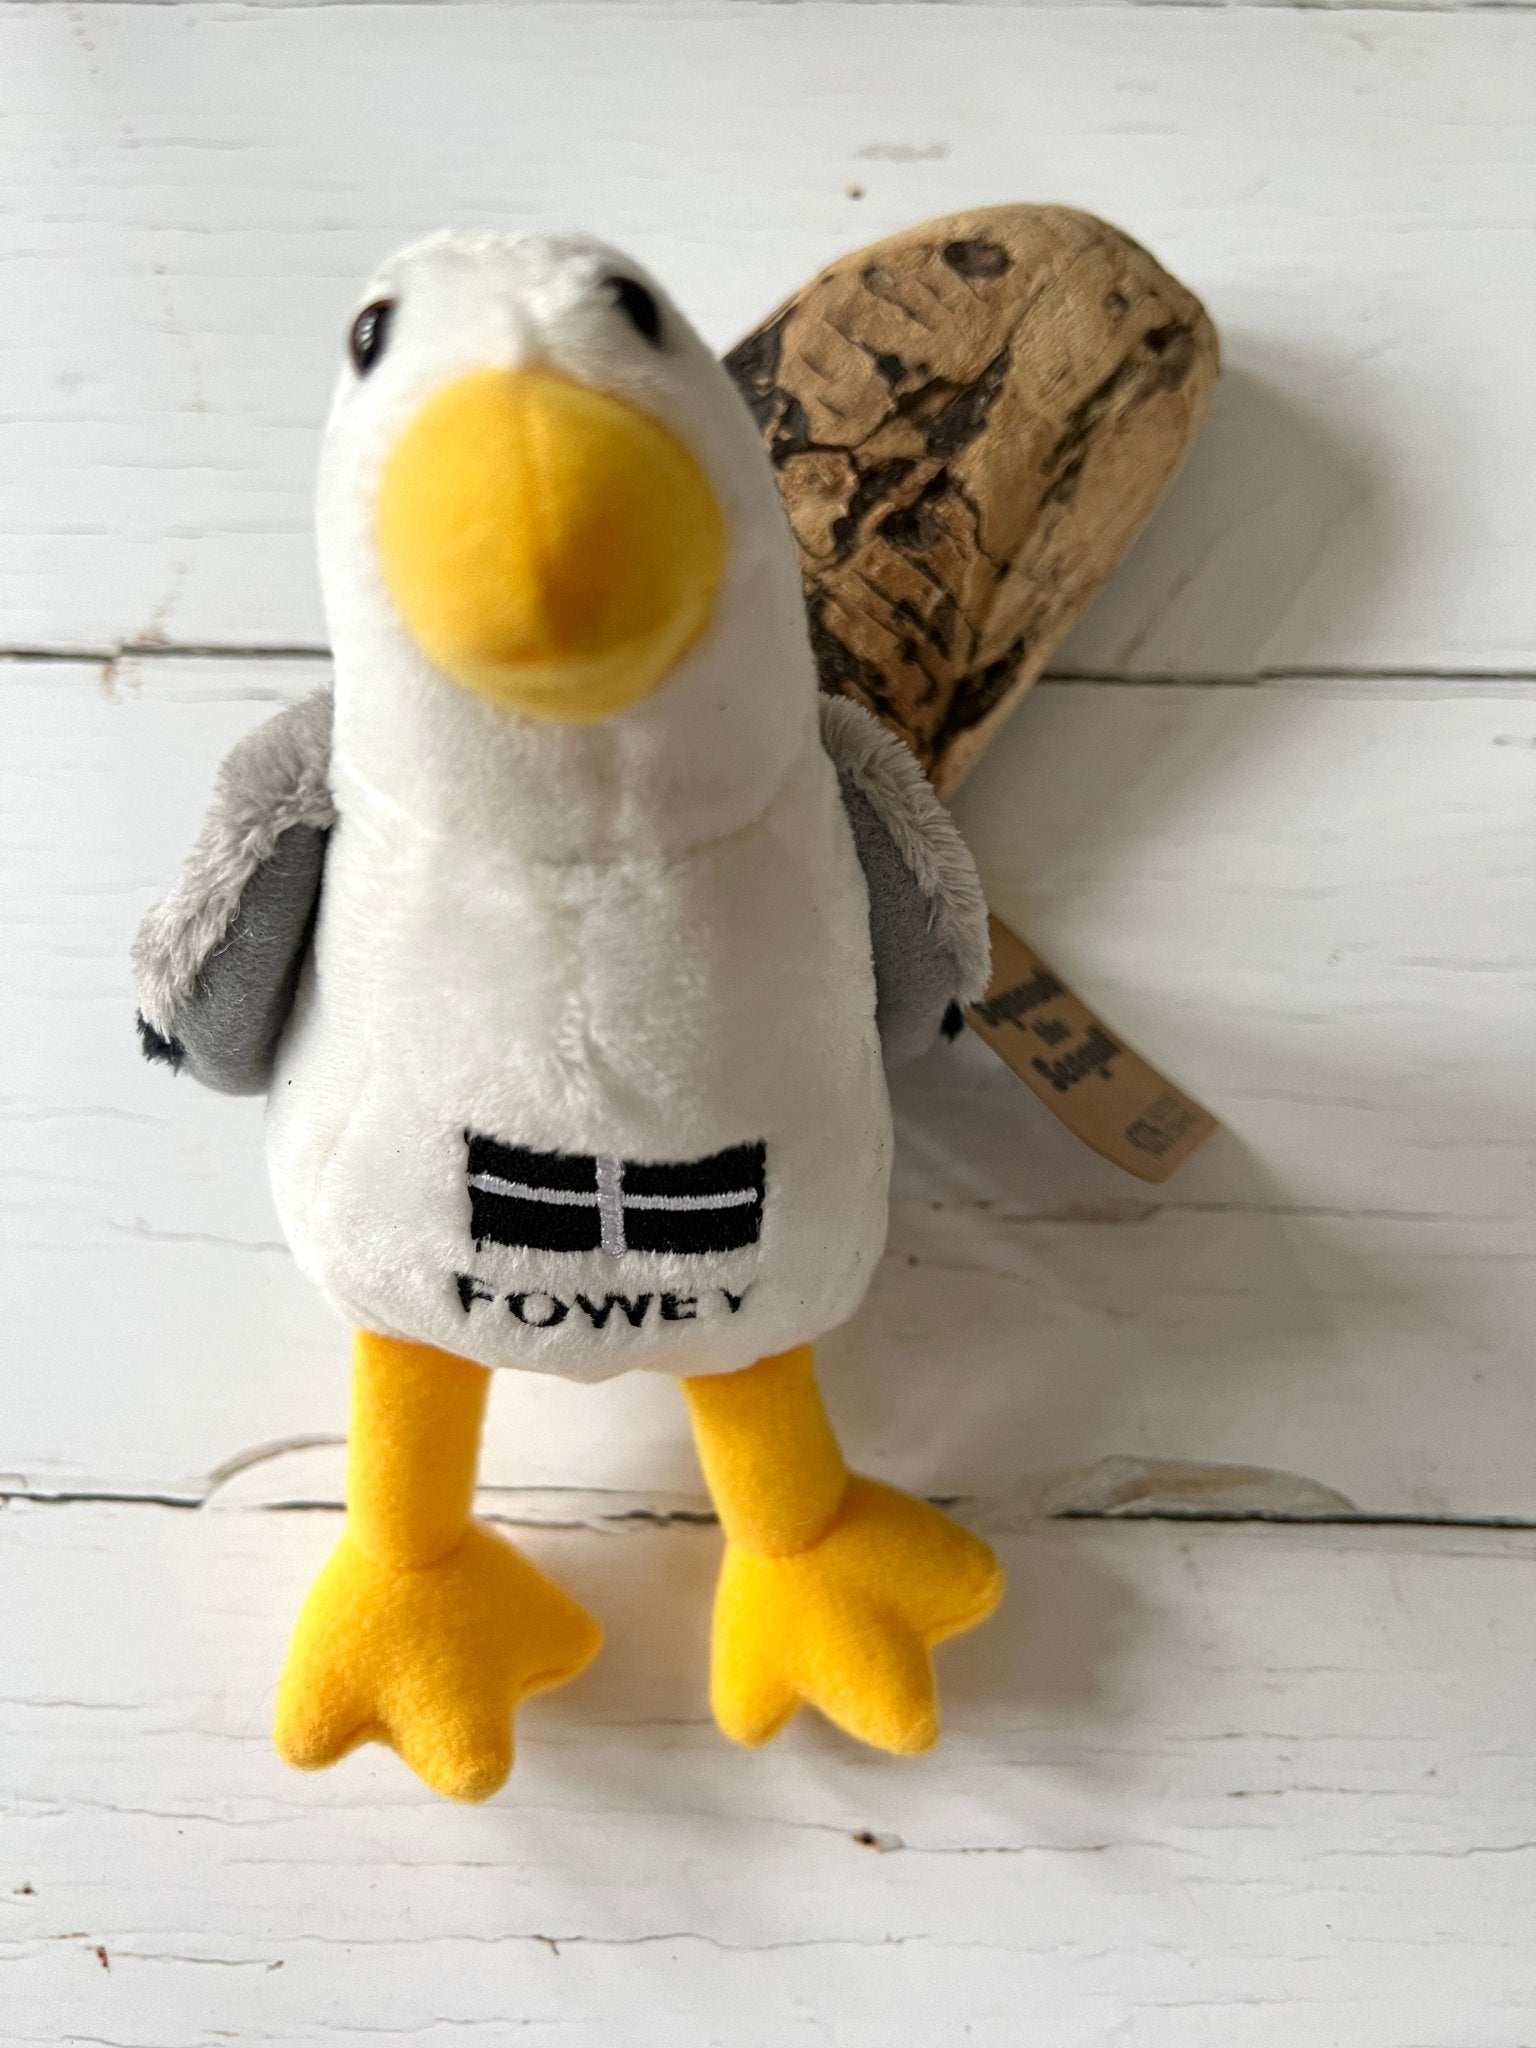 Fowey Seagull Soft Plush Toy - Readymoney Beach Shop